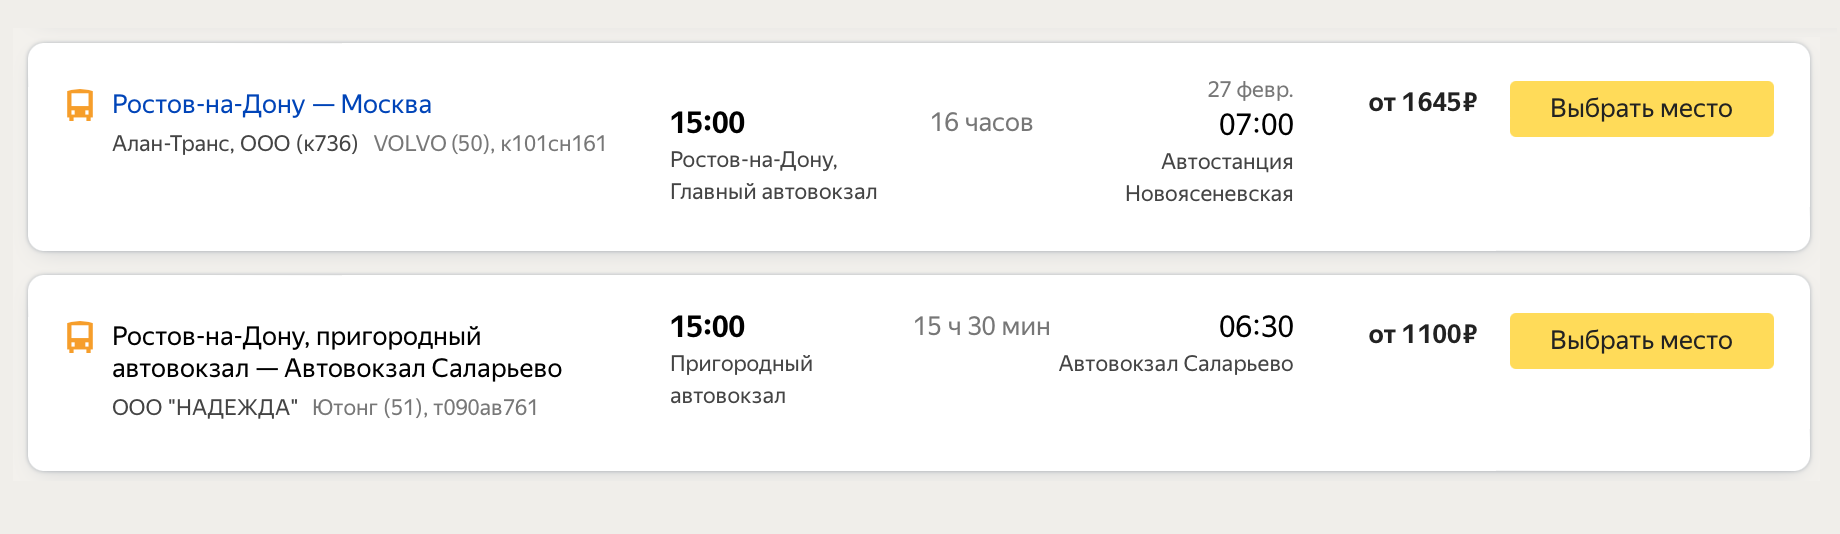 Автобусом ехать дешевле — от 1100 ₽. Источник: «Яндекс-расписания»